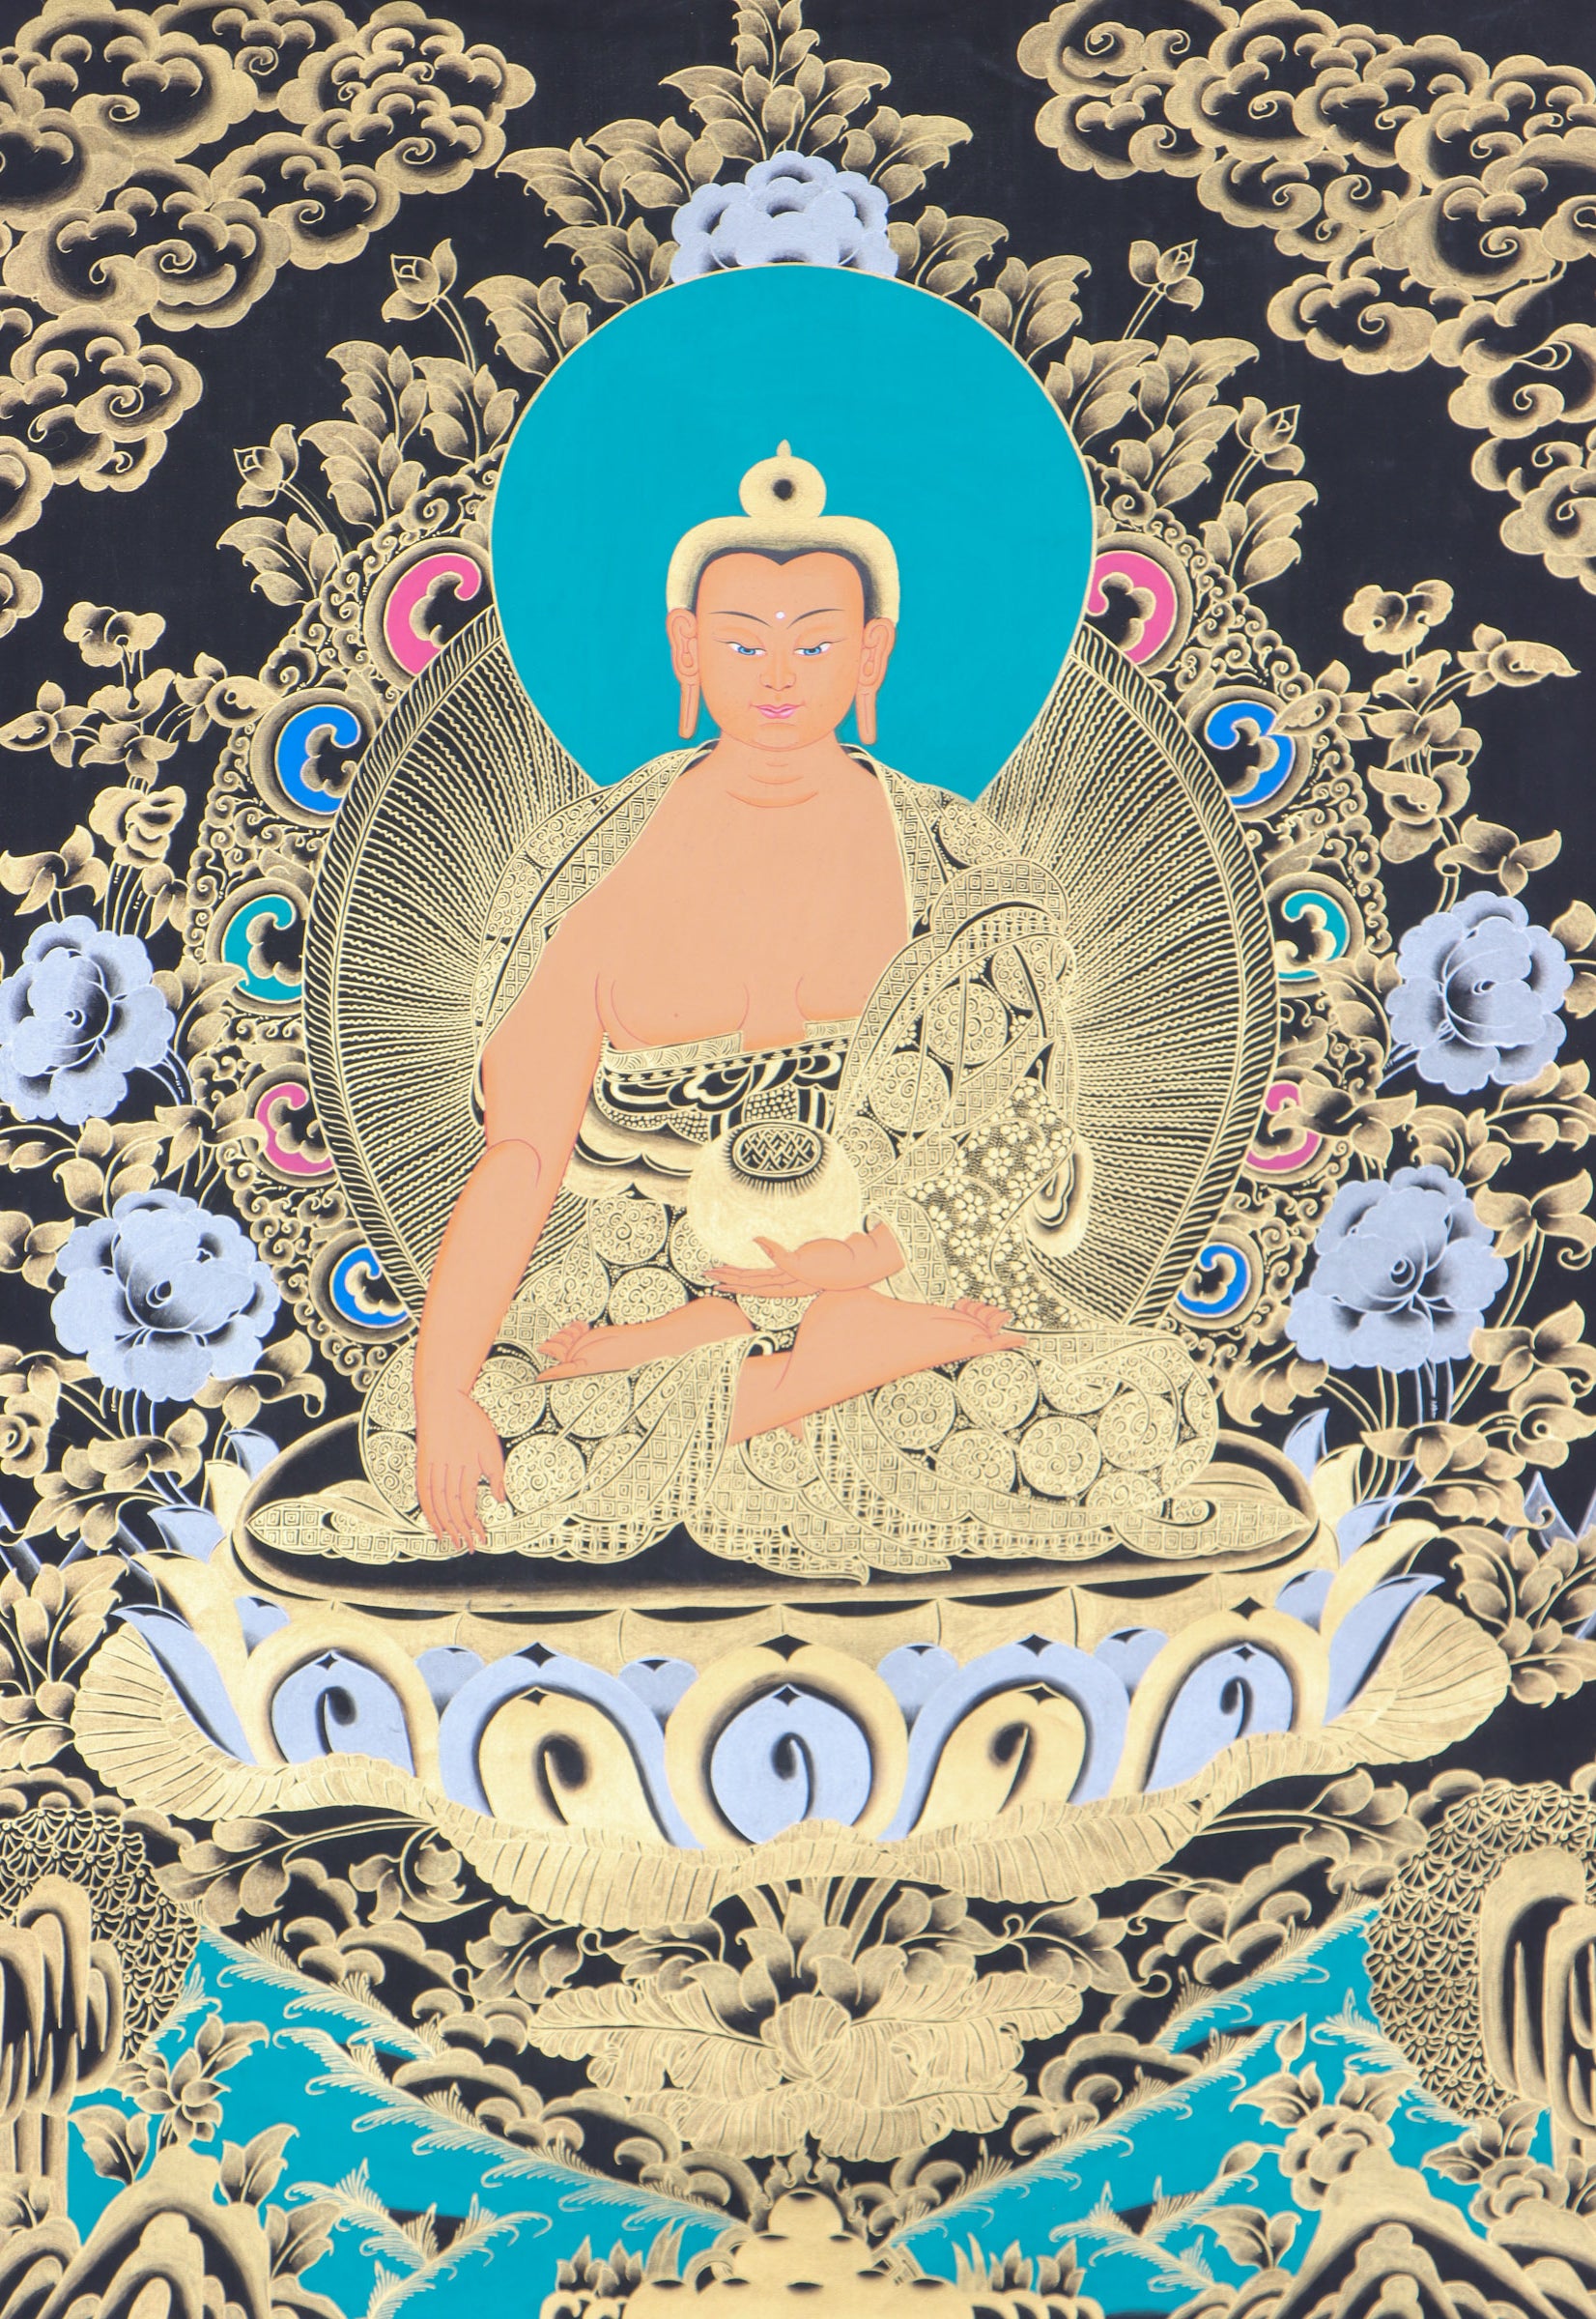 Shakyamuni Buddha Thangka Painting for aesthetic decor.